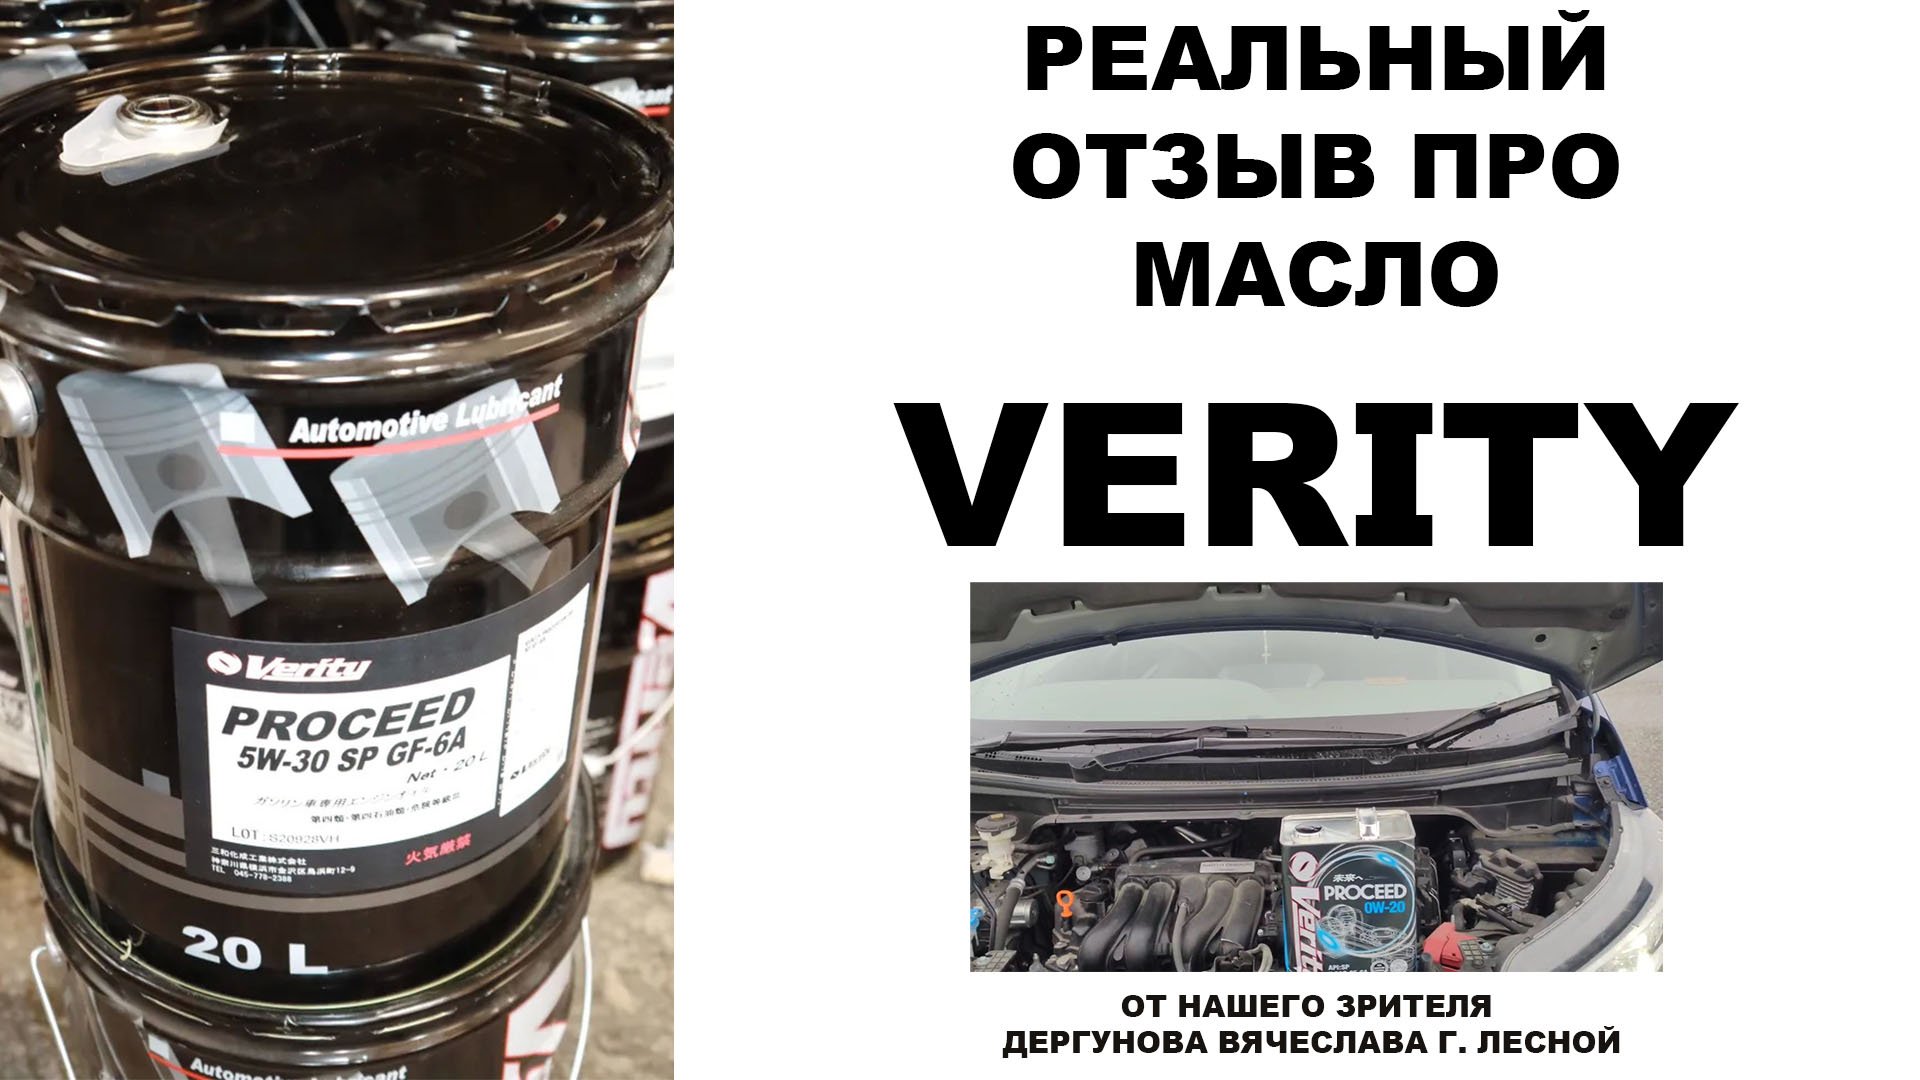 Реальный отзыв про моторное масло VERITY от нашего зрителя Дергунова Вячеслава г. Лесной